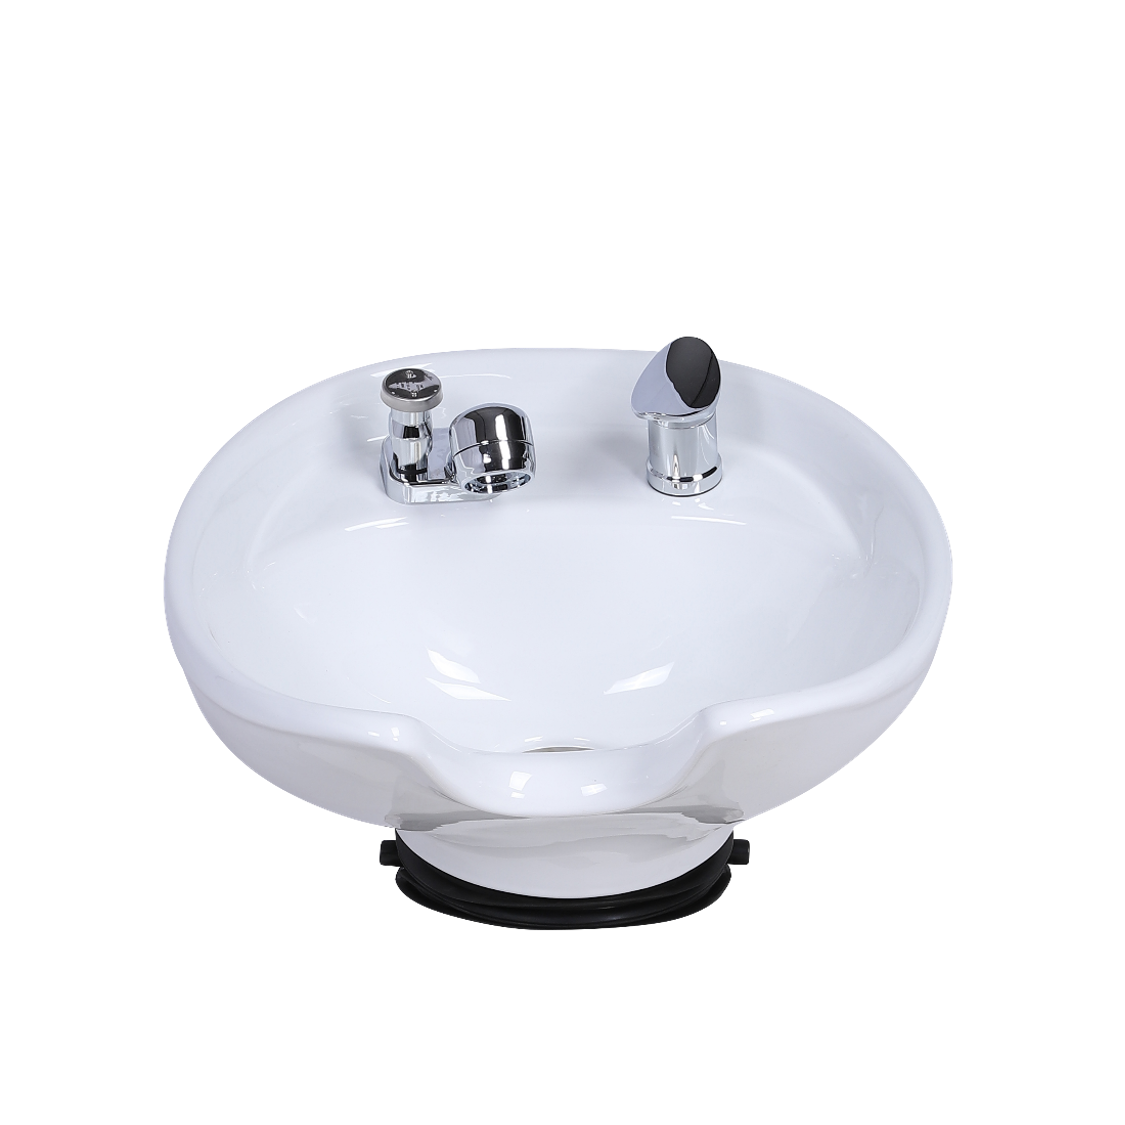 Graeson Tangrin Salon Shampoo Bowl Wash Basin Sink, White